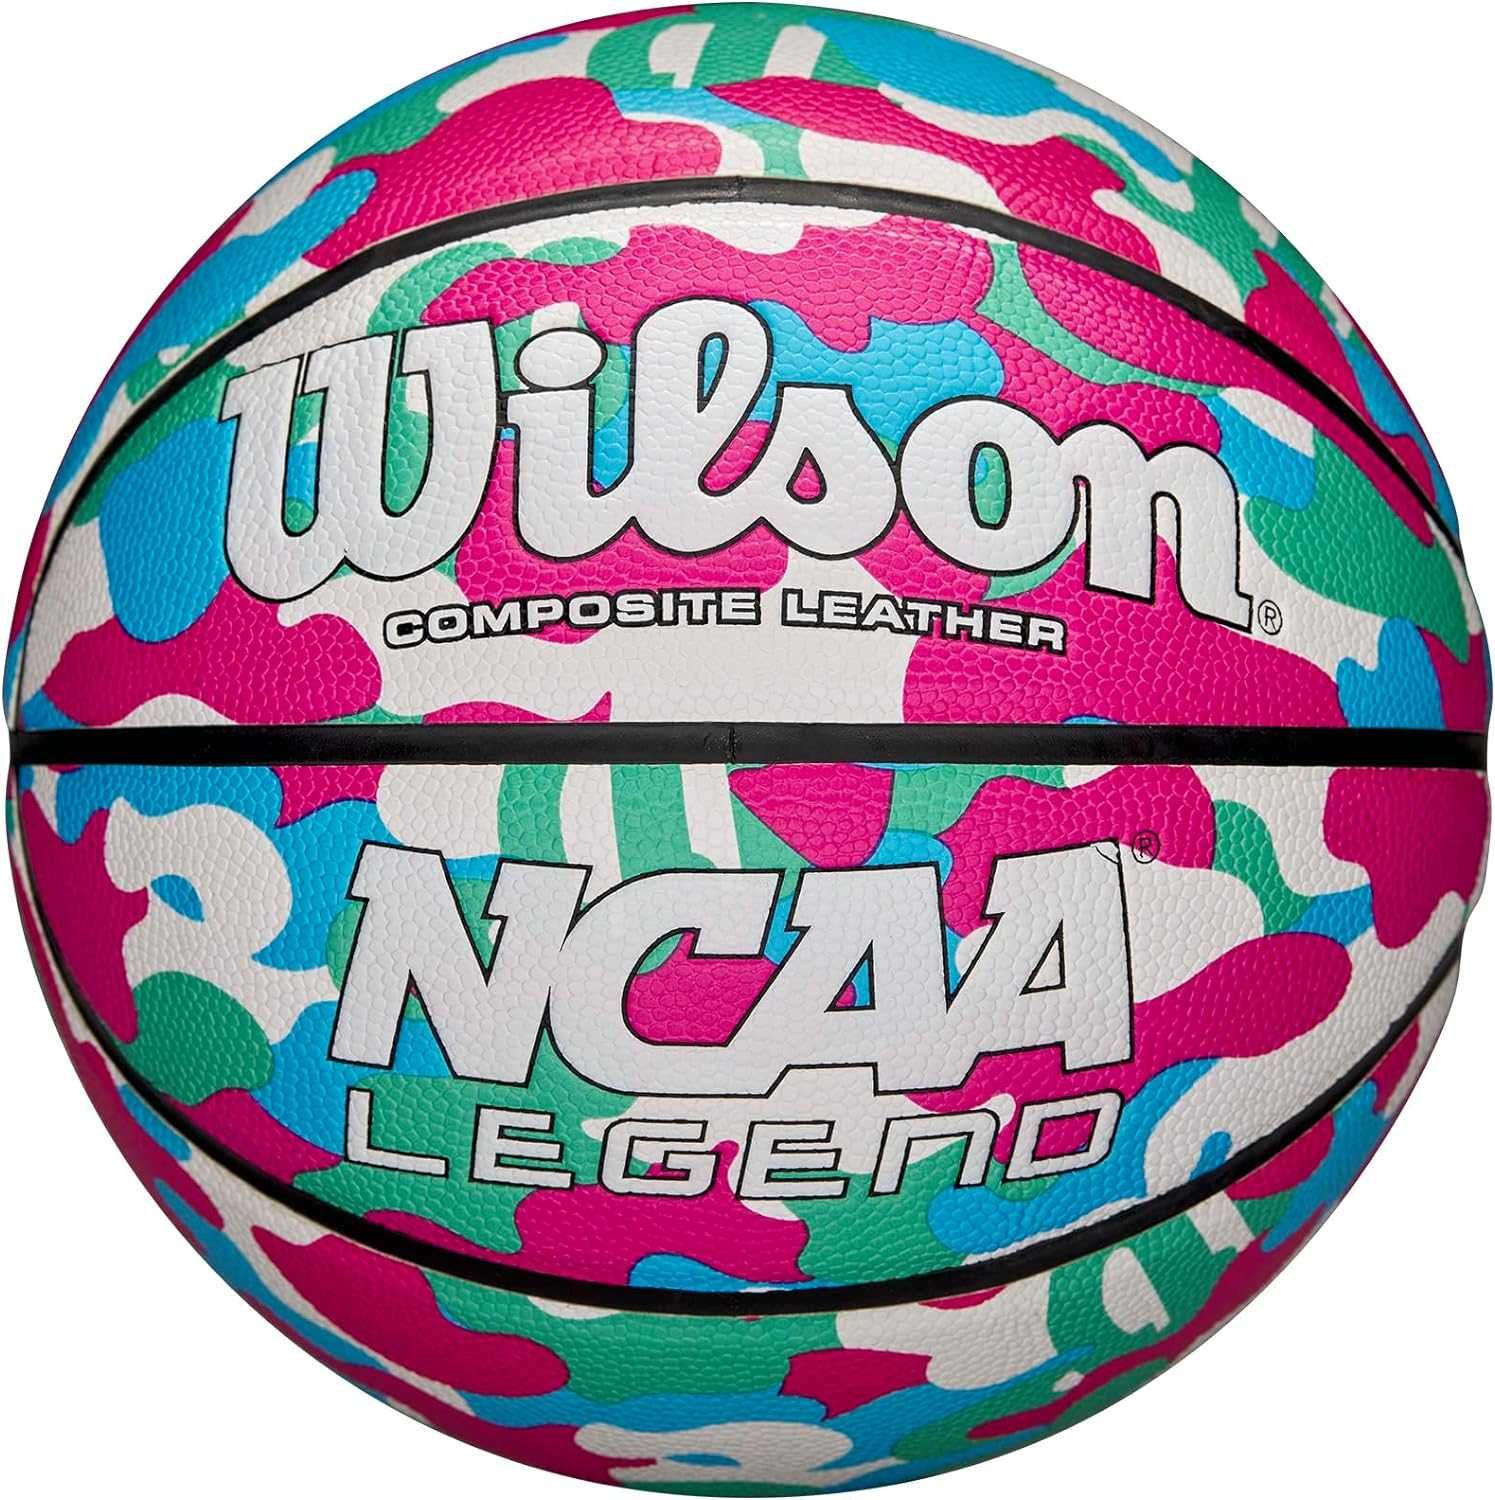 Мяч Баскетбольный Wilson NCAA Legend! Размер 5 (для детей до 8 лет)!